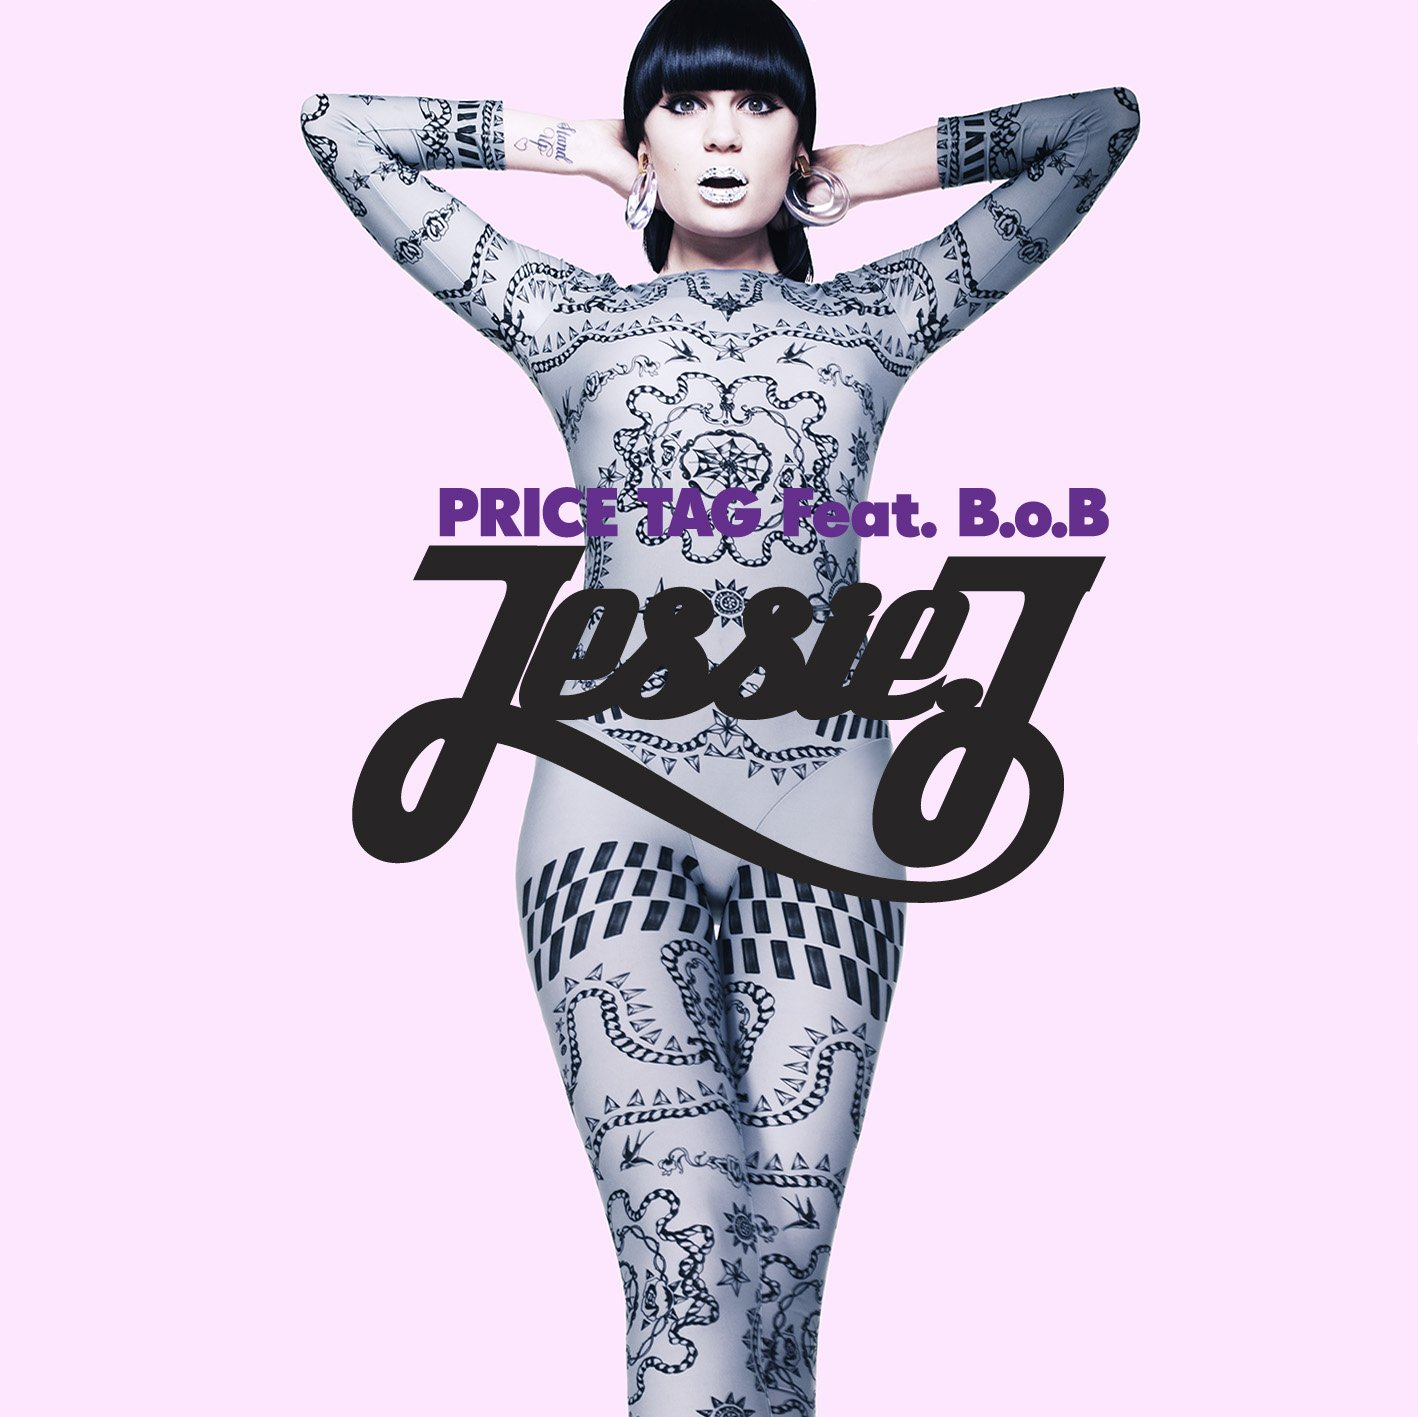 Jessie J ft B.o.B - Price Tag